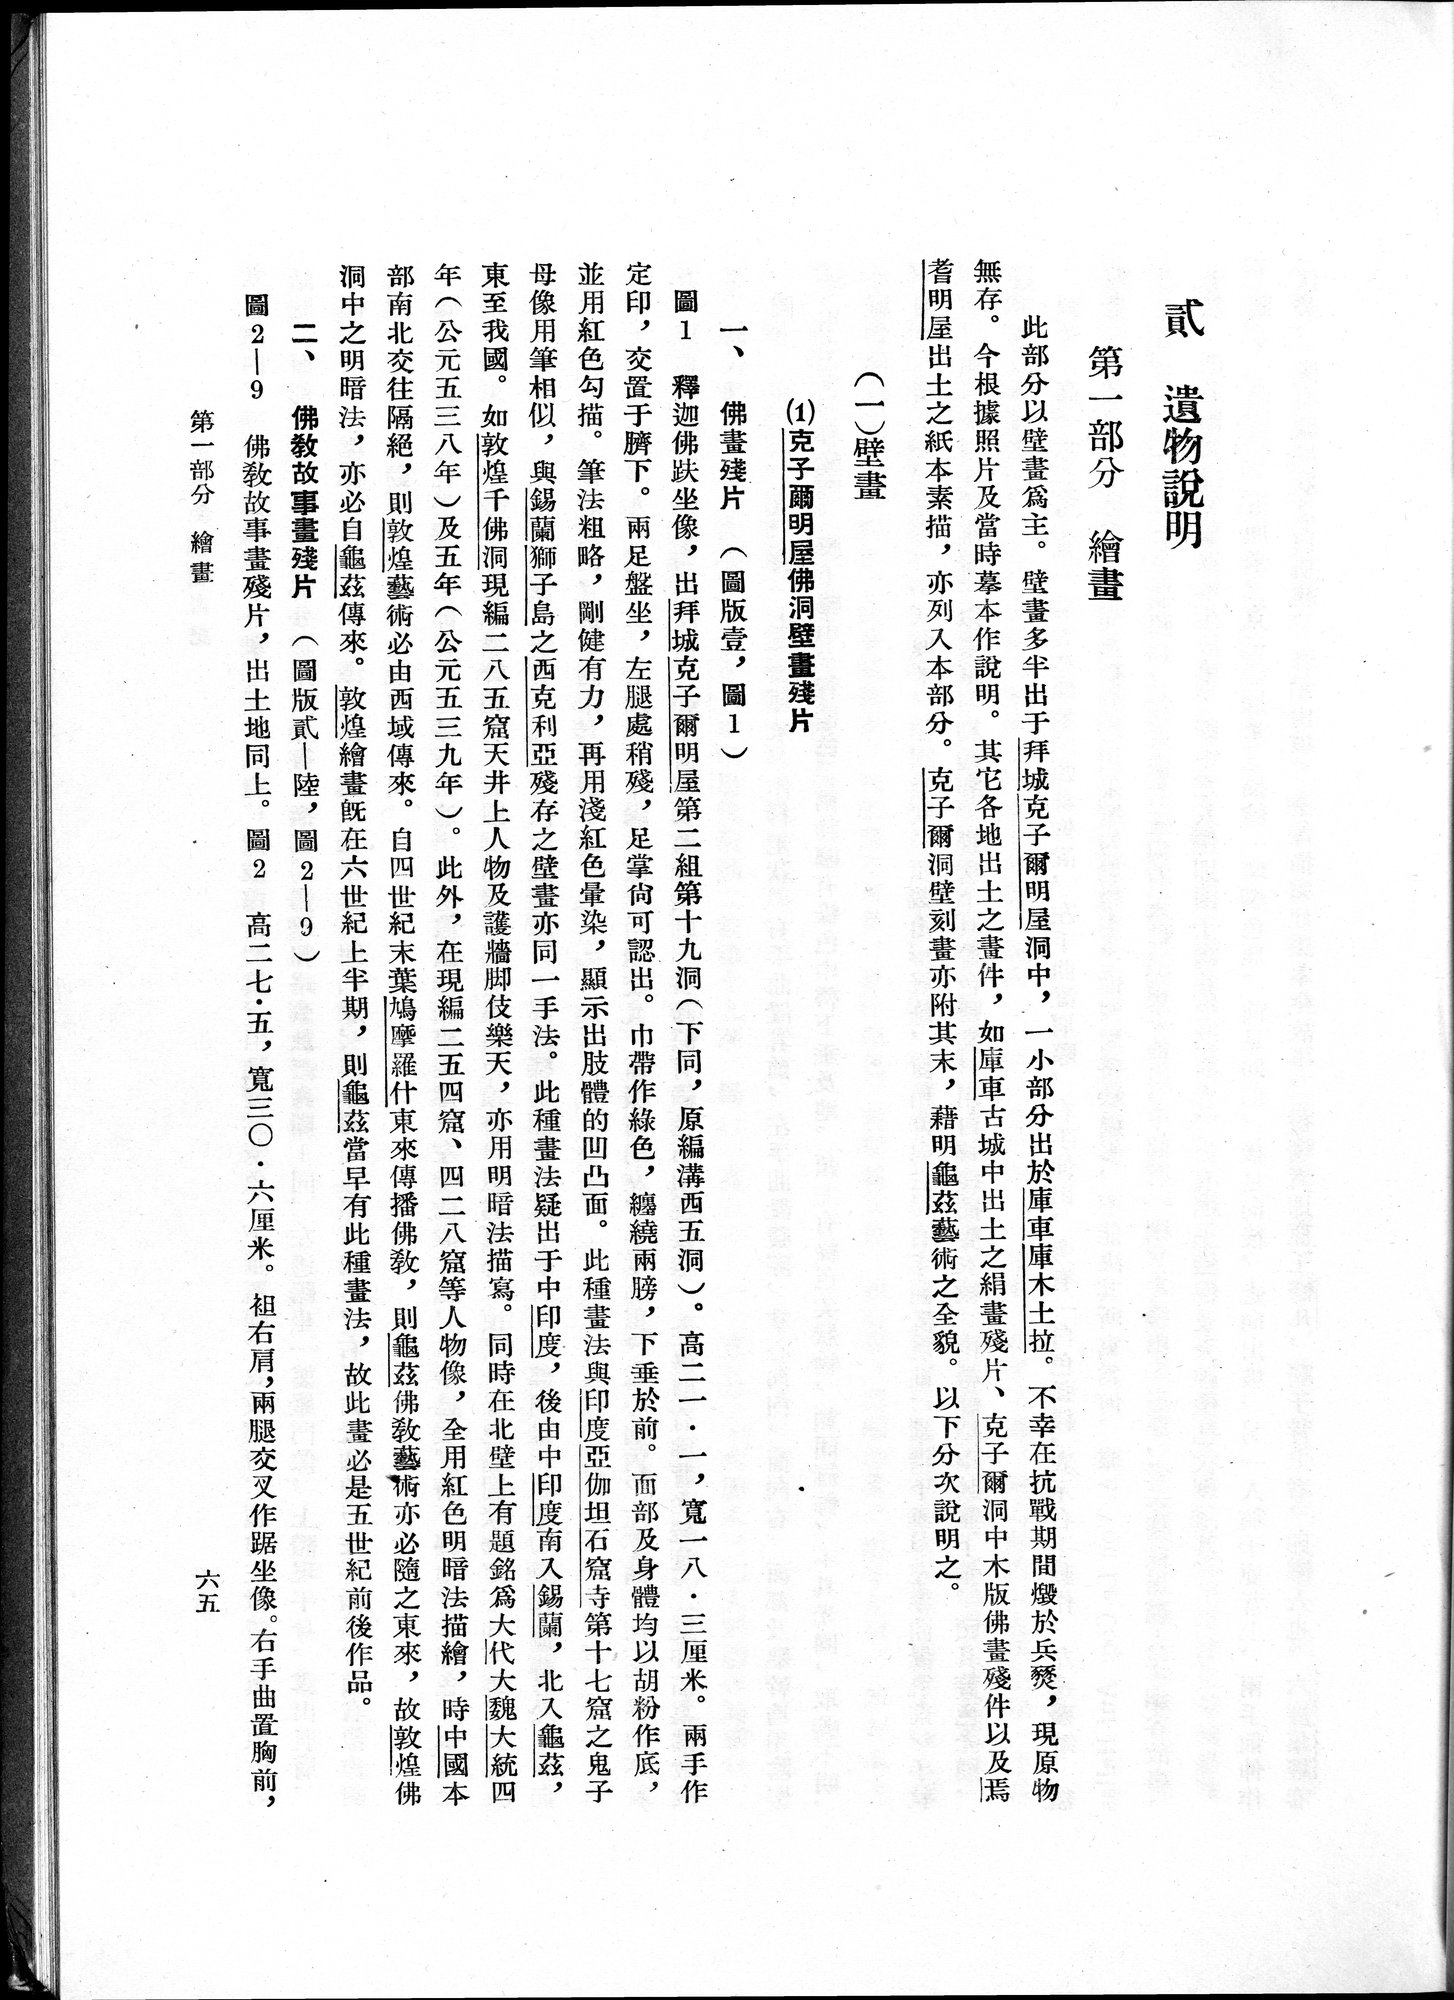 塔里木盆地考古記 : vol.1 / Page 129 (Grayscale High Resolution Image)